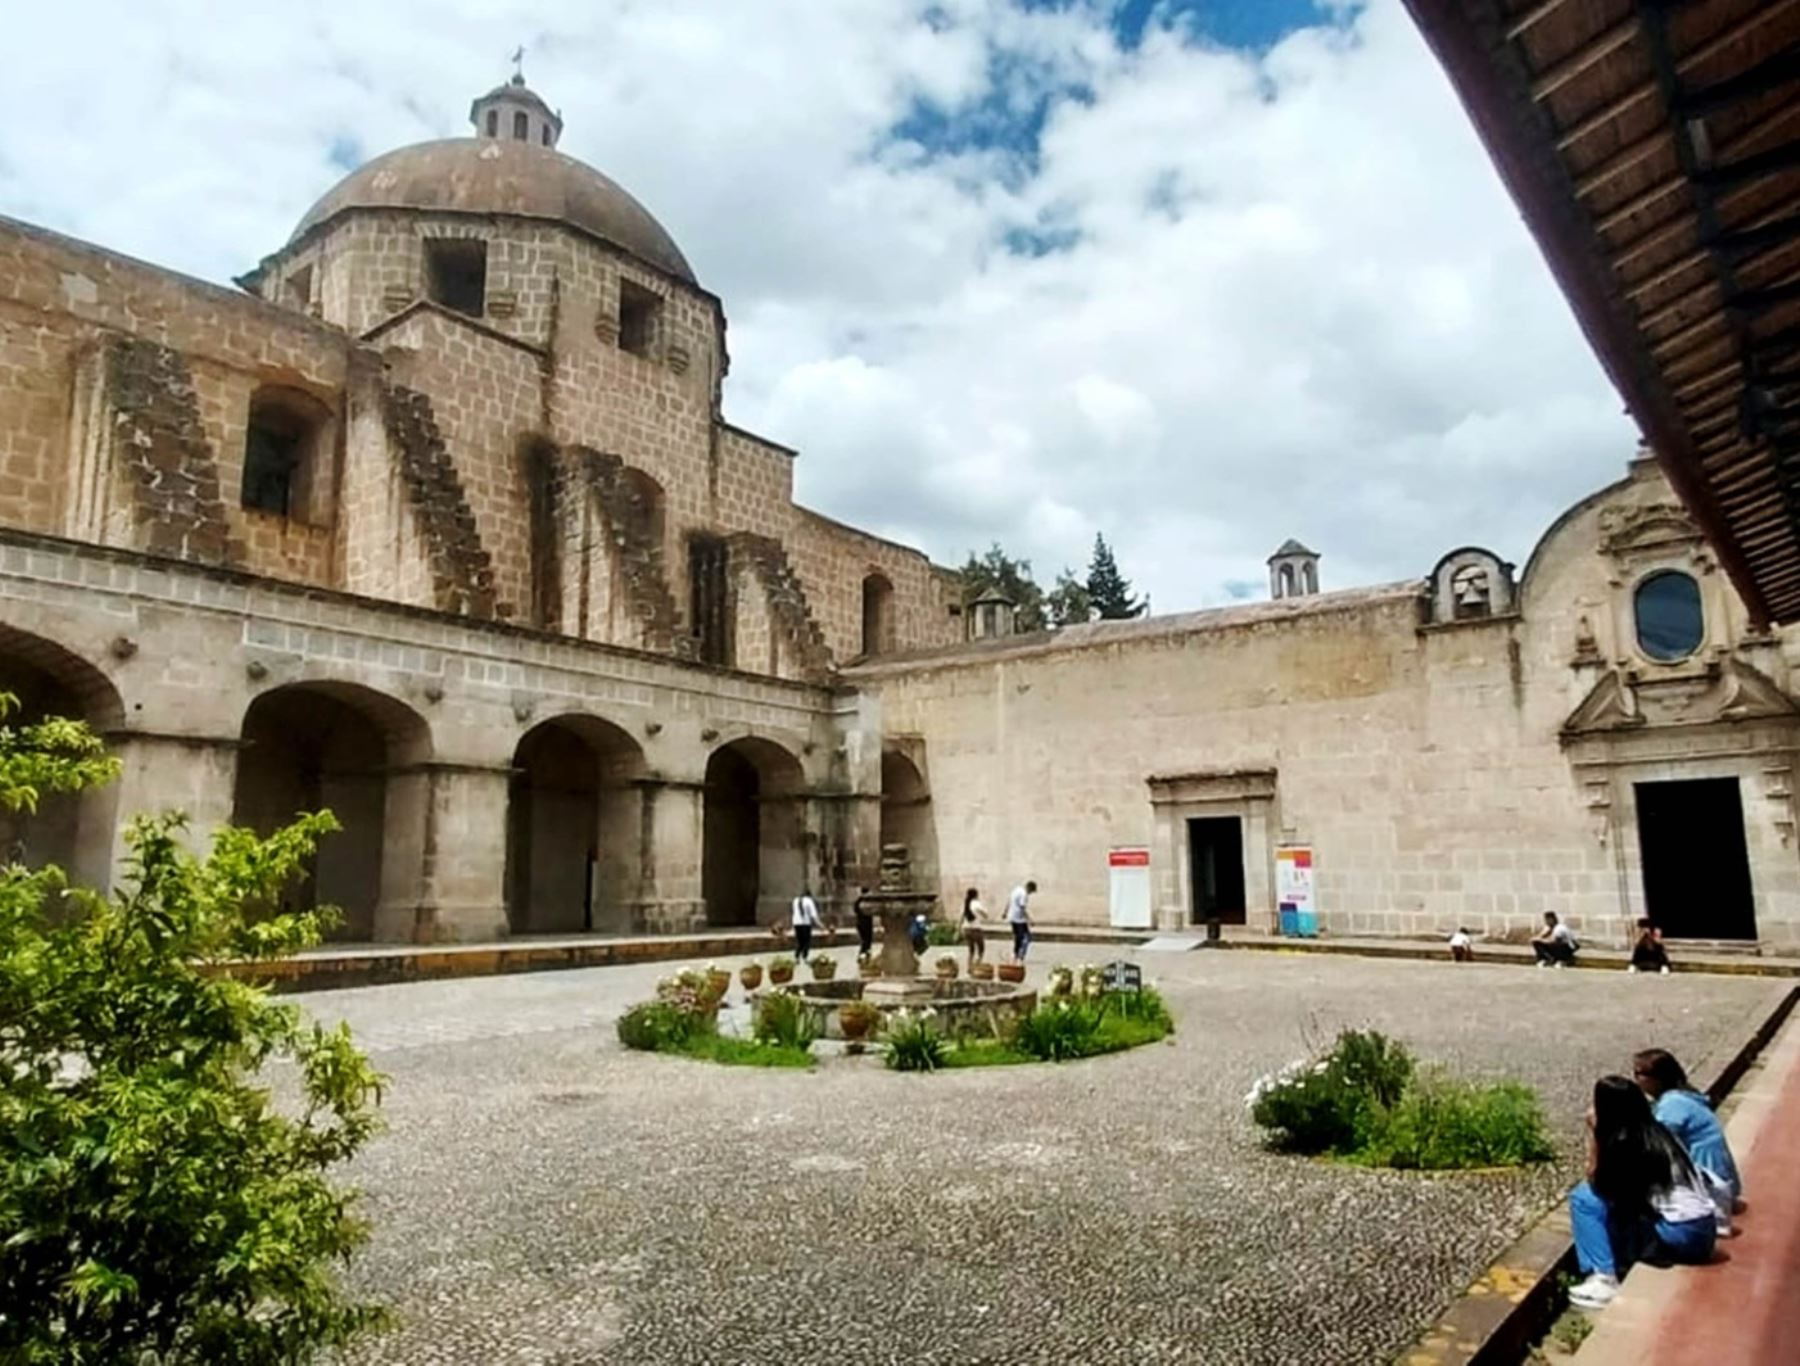 El conjunto monumental Belén, conformado por el Cuarto del Rescate, la iglesia Belén y el museo etnográfico, es el lugar más visitado de Cajamarca gracias al programa Museos Abiertos. Luego se ubica Cumbemayo. Foto: ANDINA/difusión.